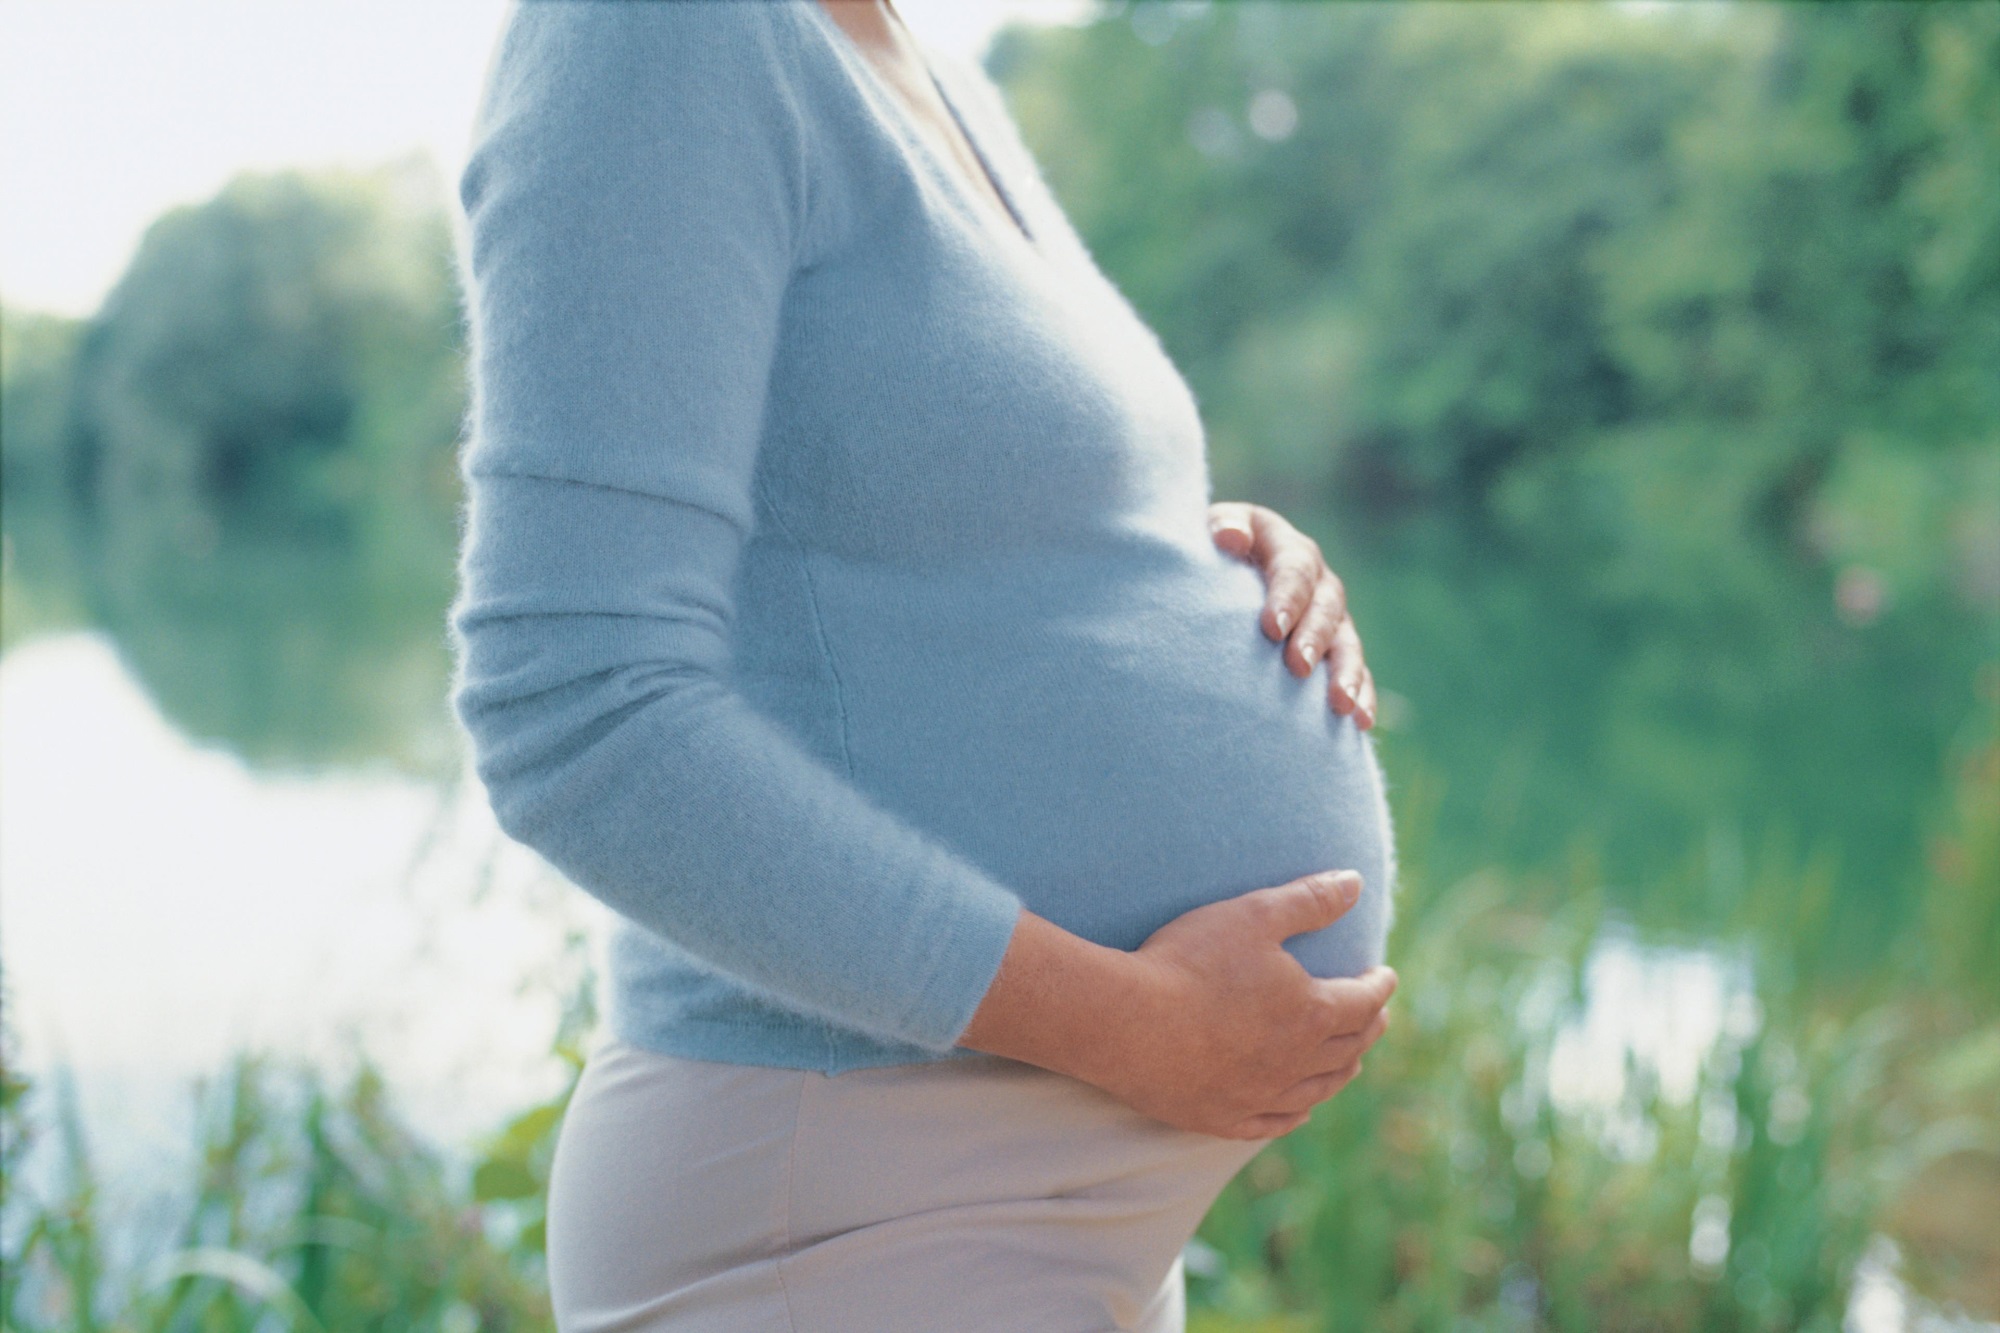 Ngứa dữ dội khi mang thai: Vấn đề về da mà nhiều mẹ bầu gặp phải - Ảnh 2